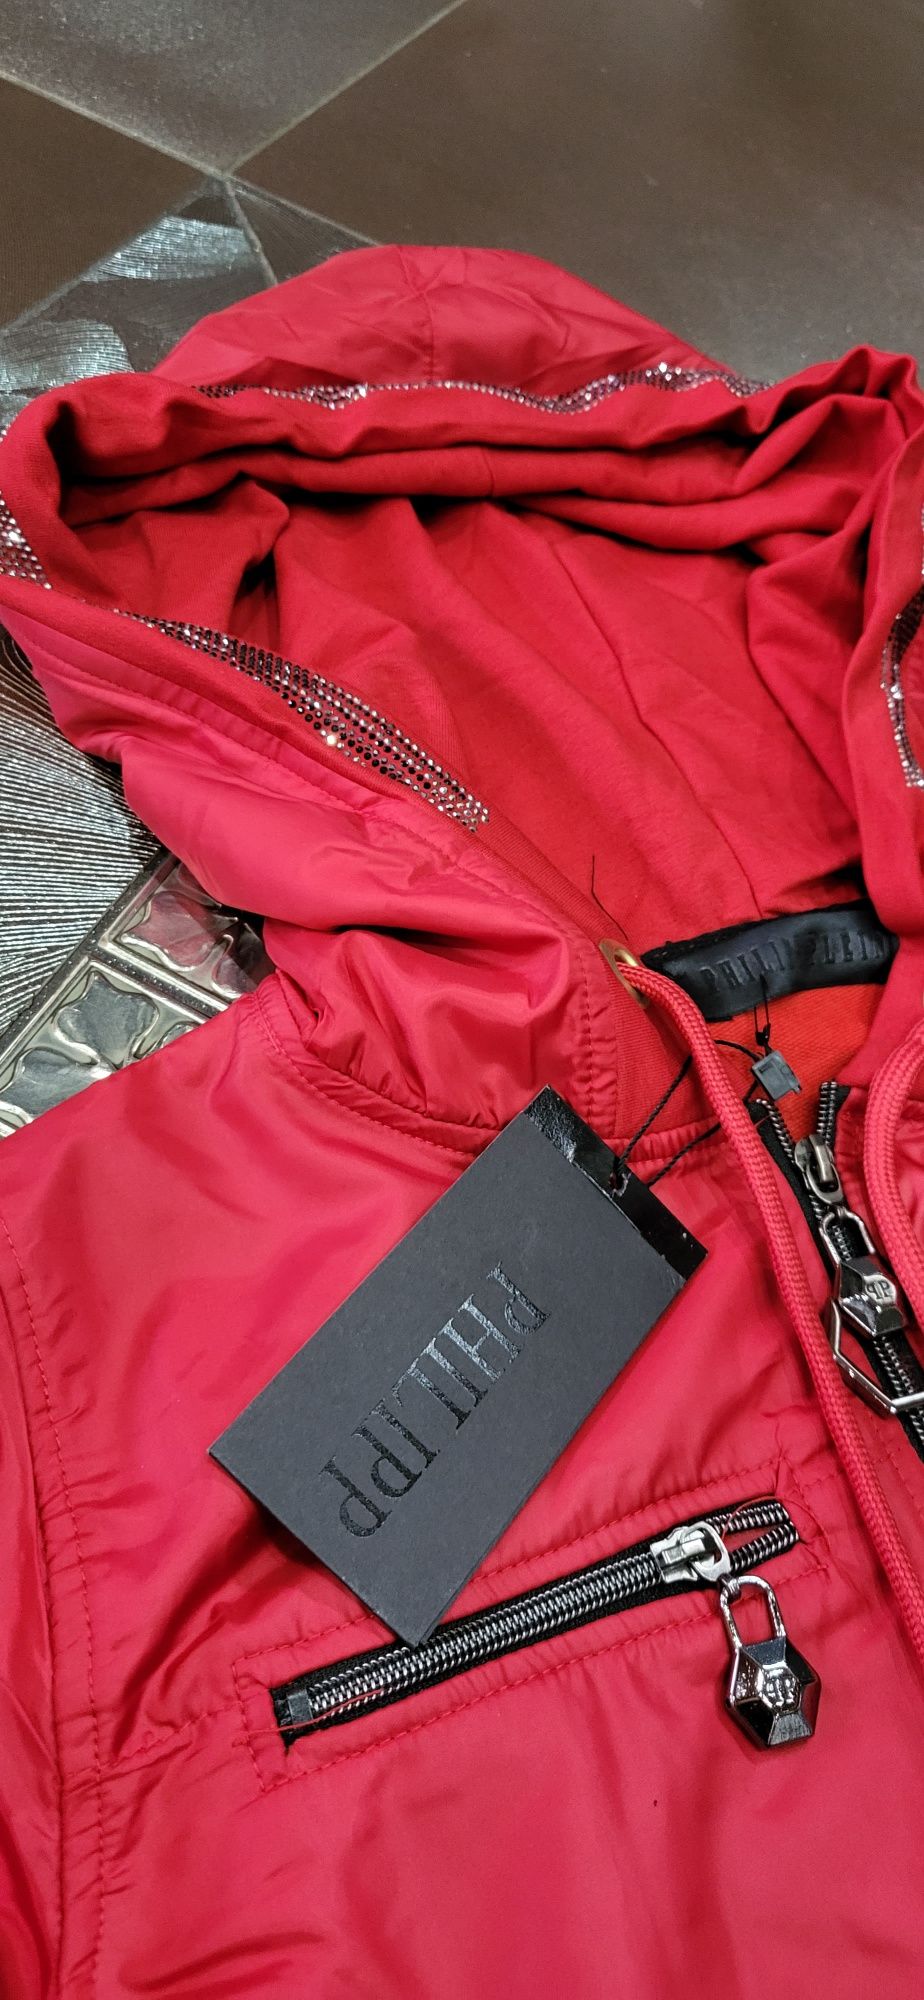 PP czerwony dres damski premium bomberka spodnie zasuwny kaptur S